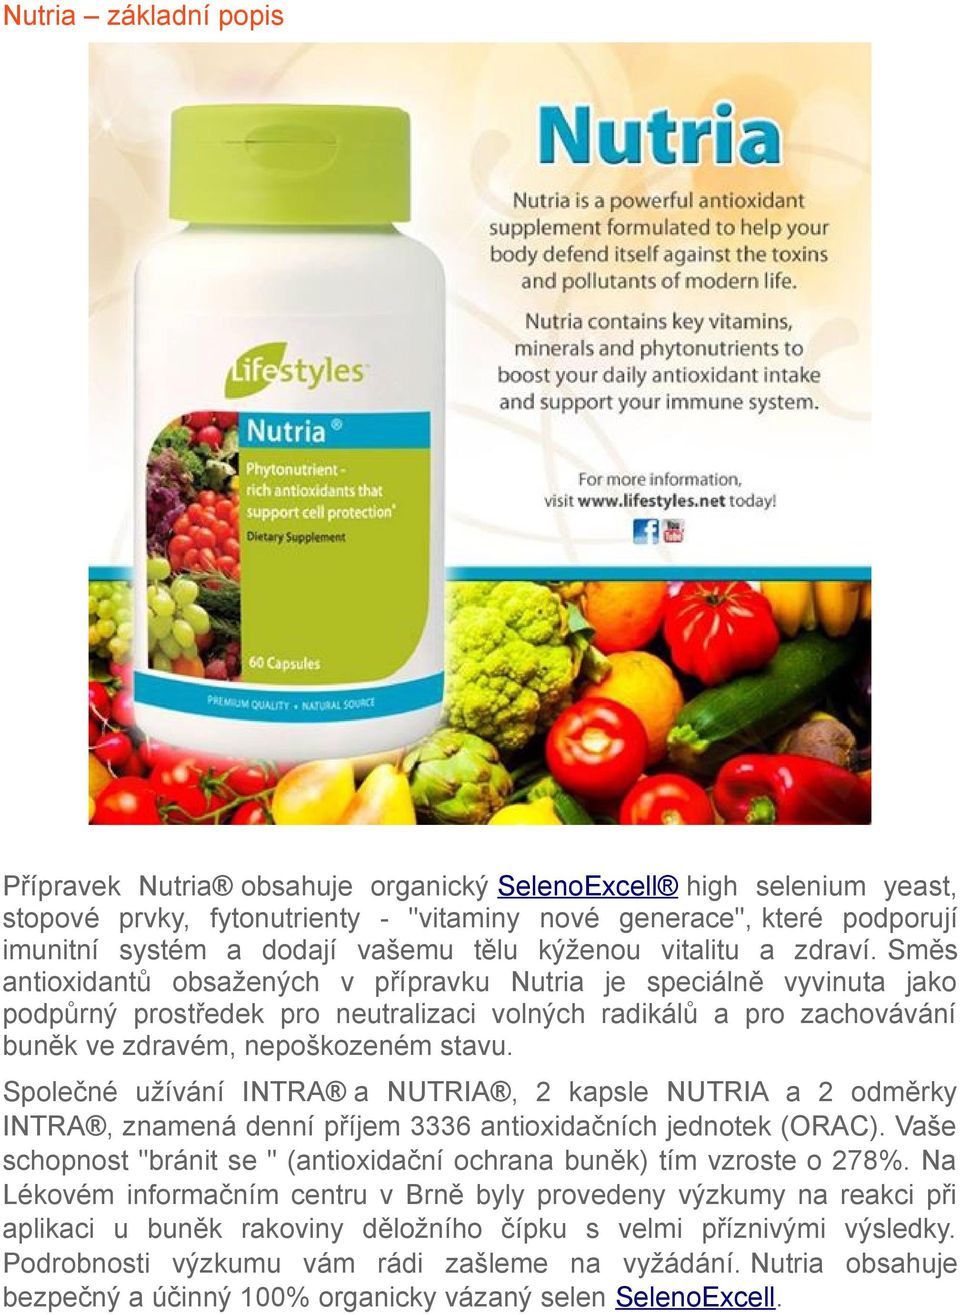 Směs antioxidantů obsažených v přípravku Nutria je speciálně vyvinuta jako podpůrný prostředek pro neutralizaci volných radikálů a pro zachovávání buněk ve zdravém, nepoškozeném stavu.